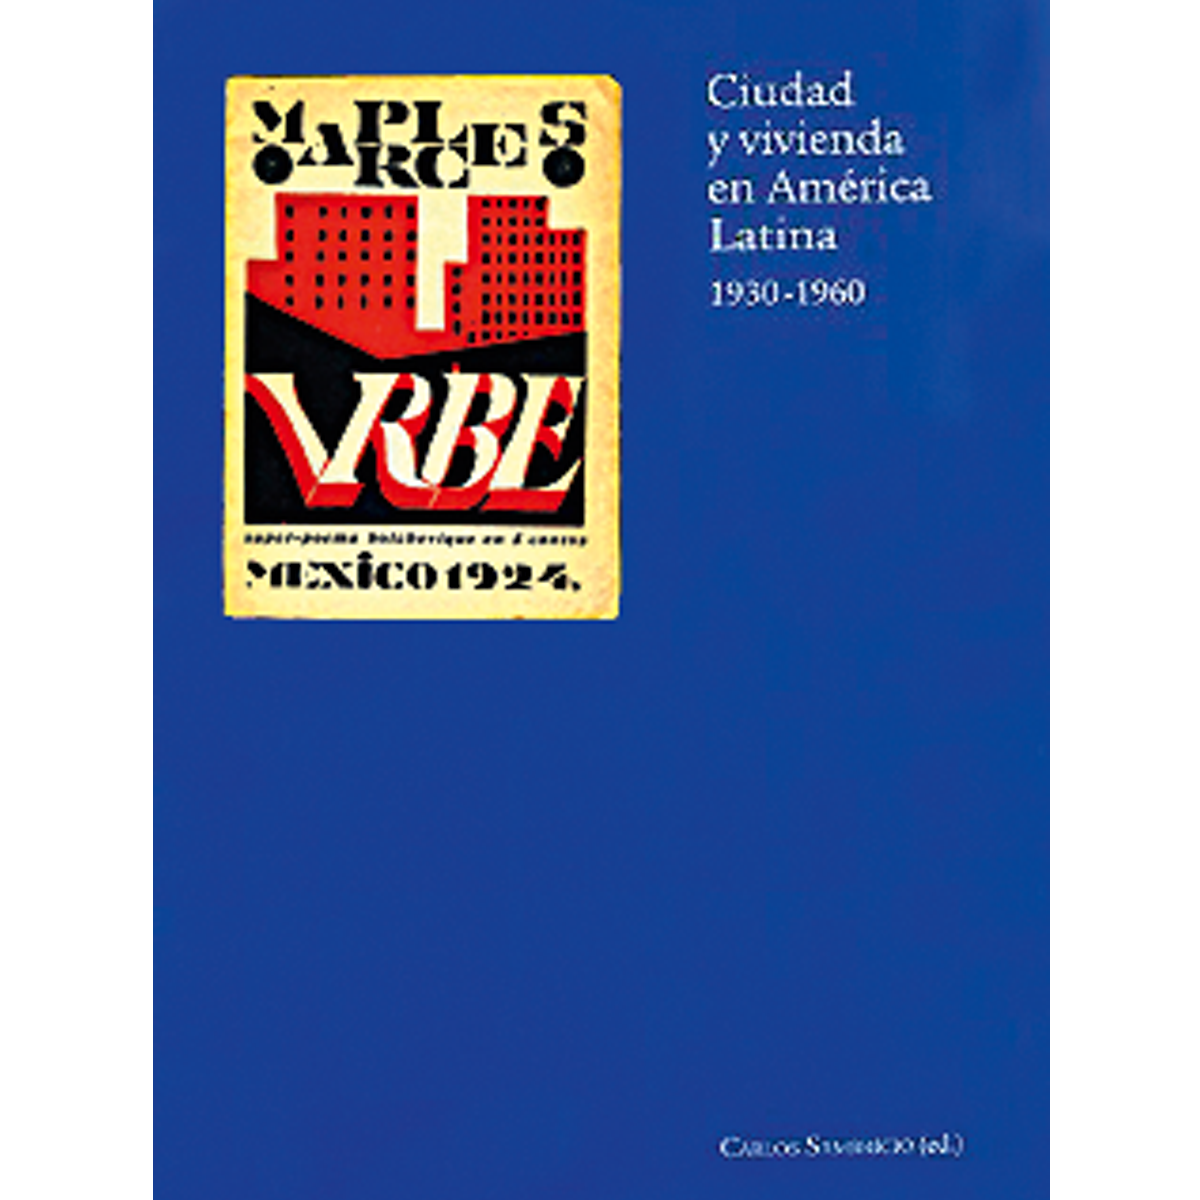 Ciudad y vivienda en América  Latina, 1930-1960